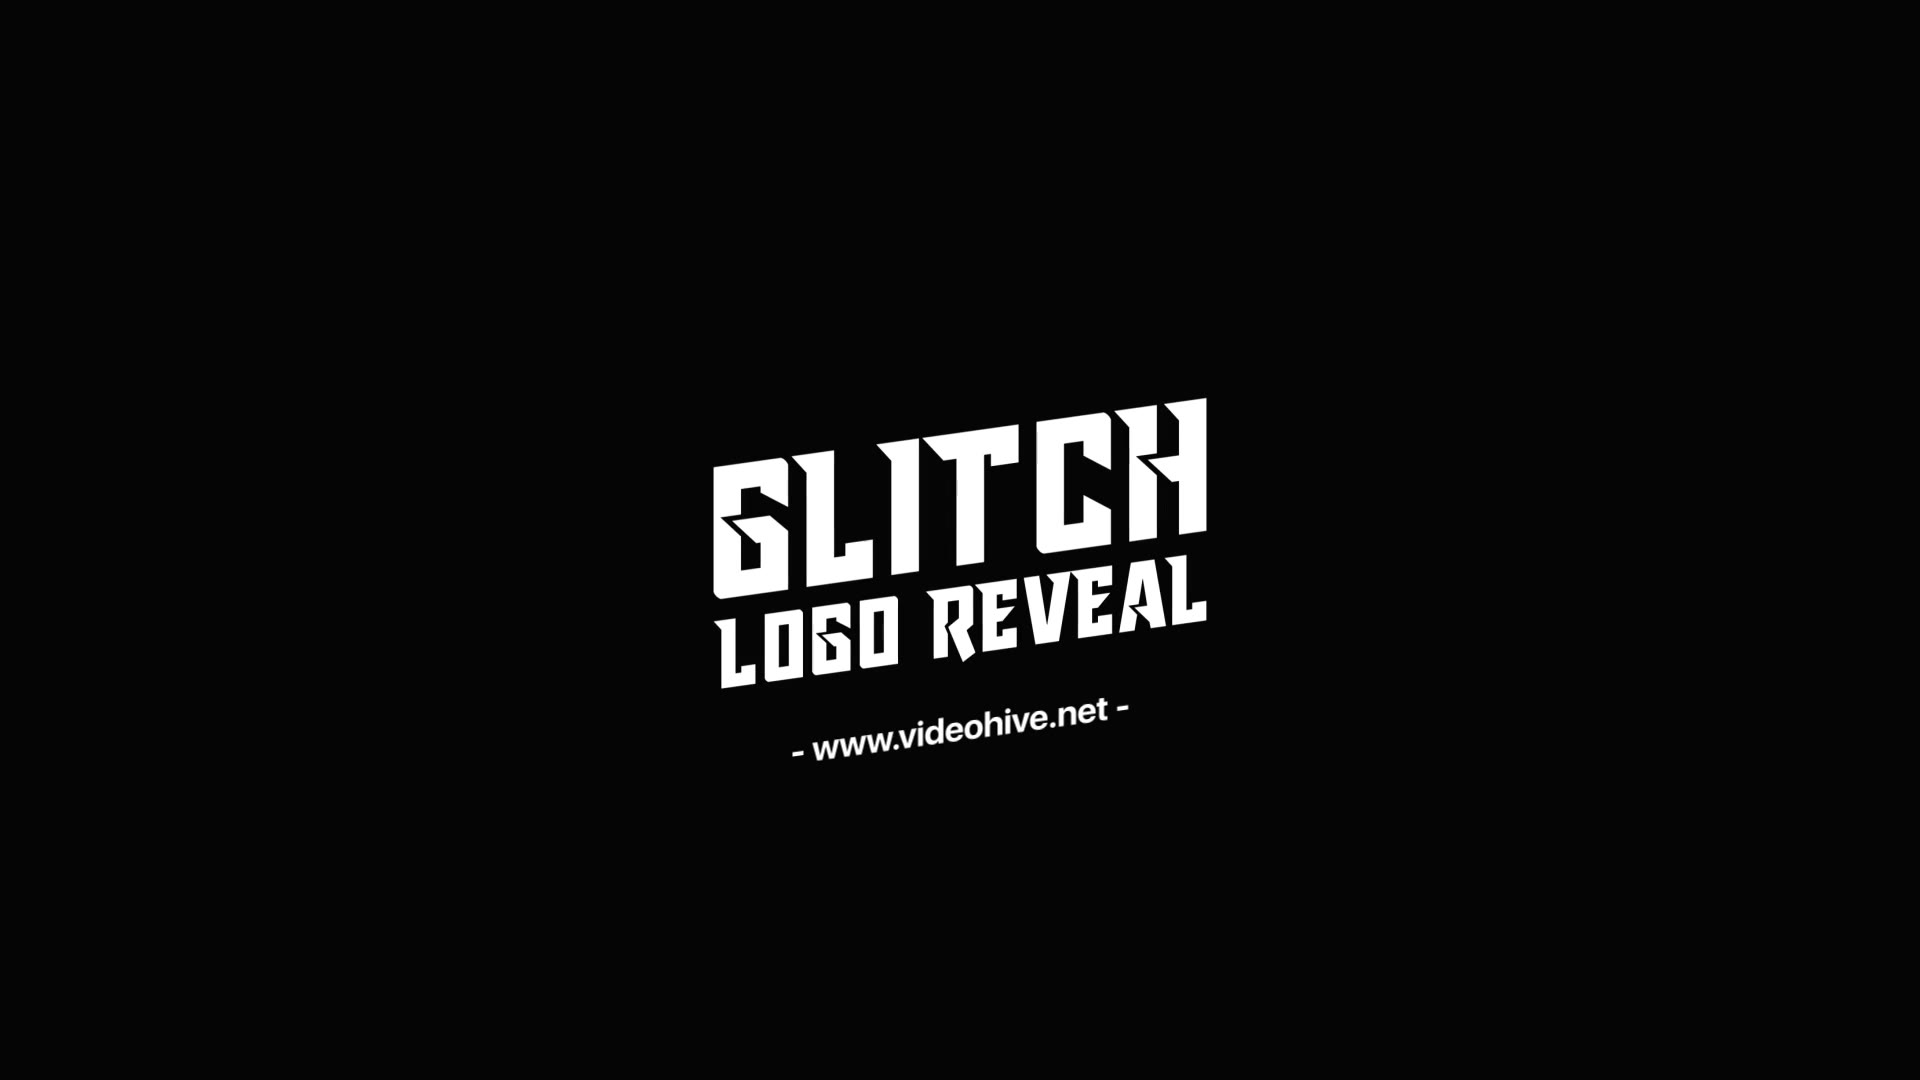 Fast Glitch Logo Reveal Template Videohive 34195503 Premiere Pro Image 5